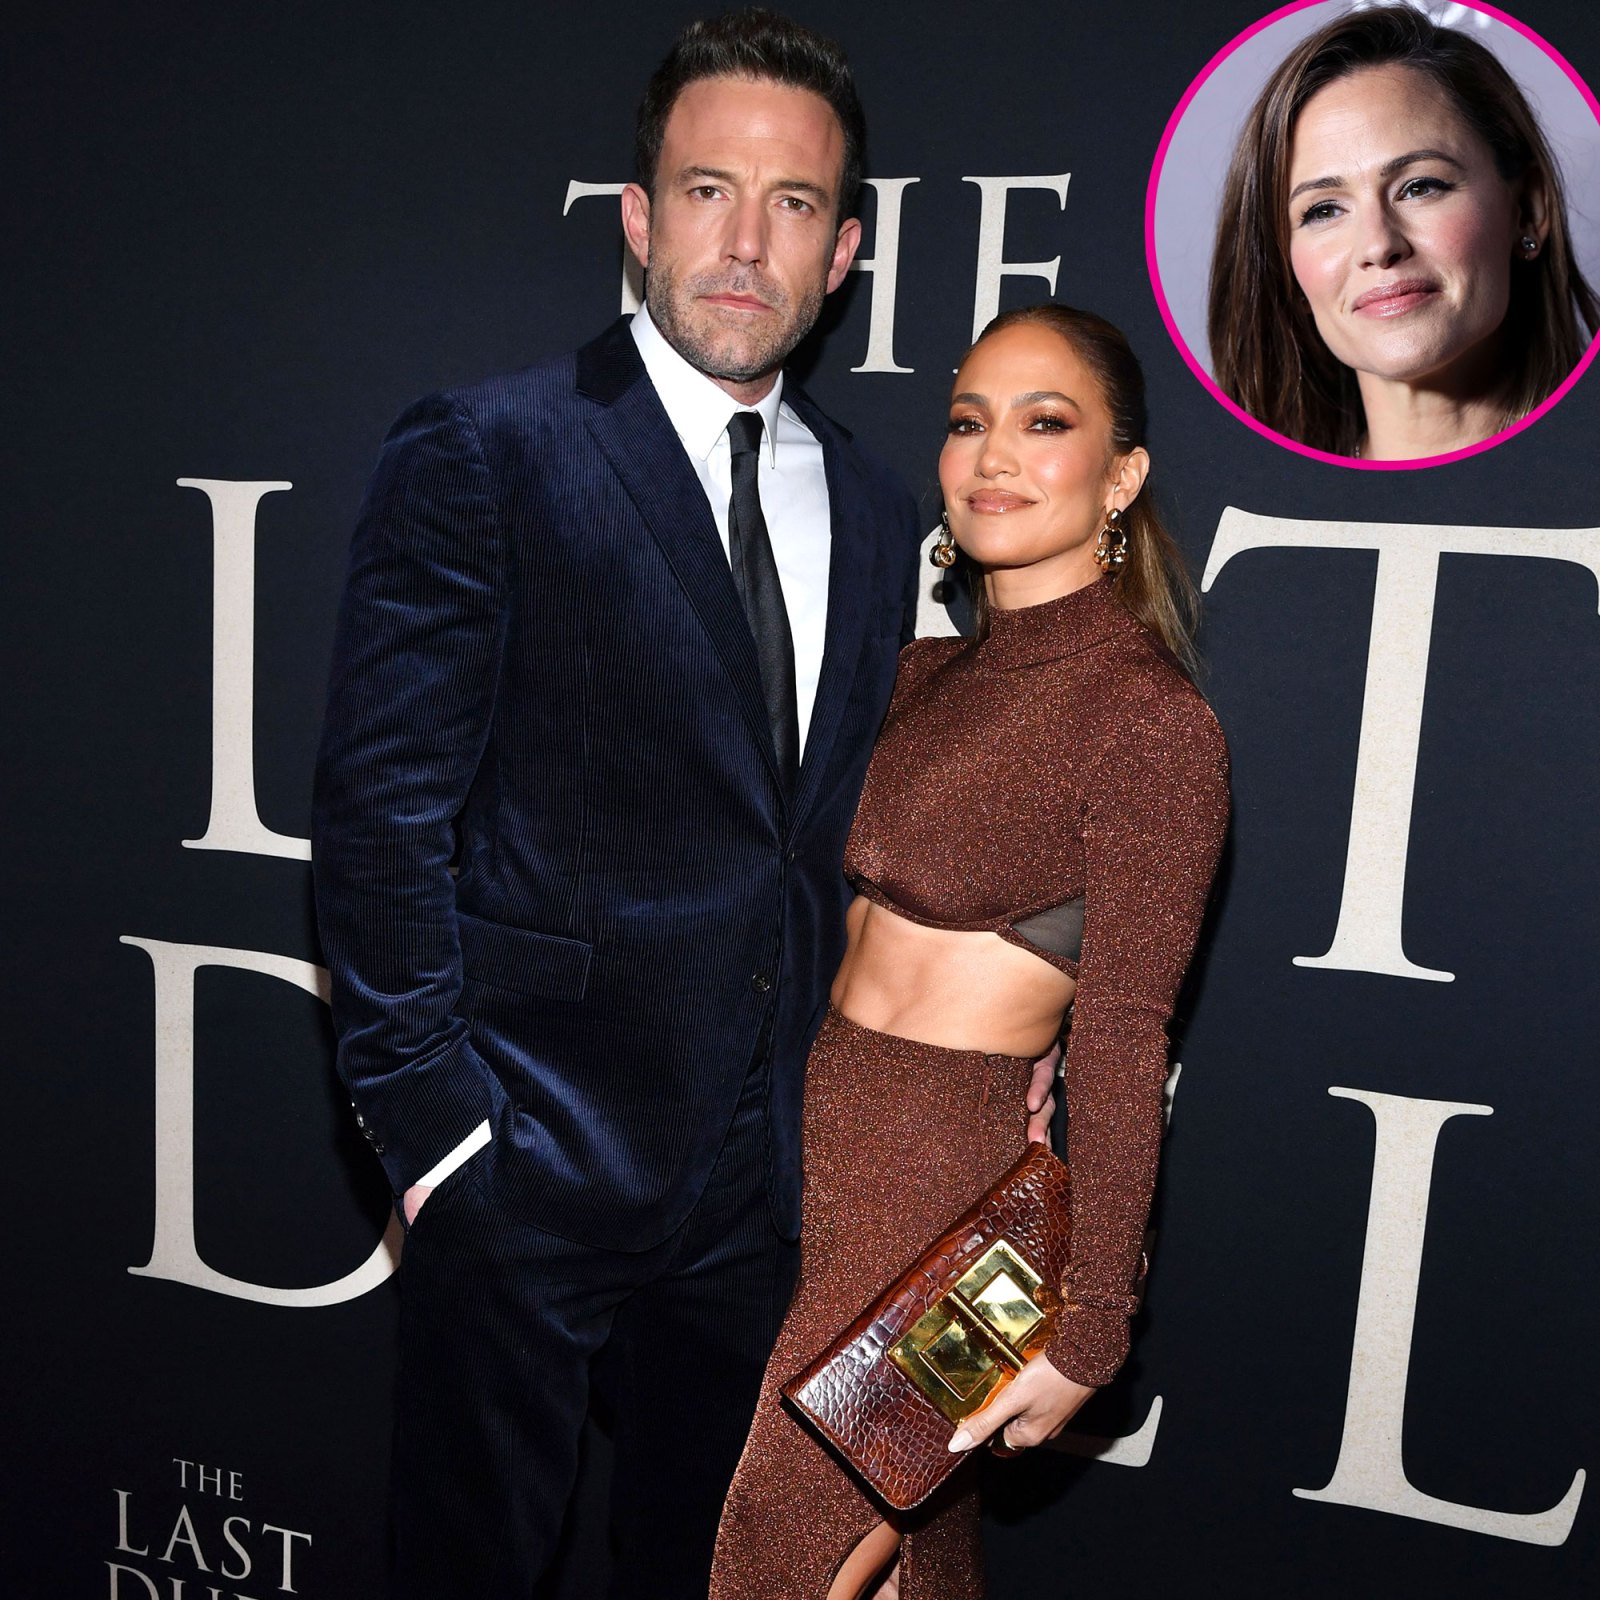 Jennifer Lopez Supports Ben Affleck After His Comments About Jennifer Garner